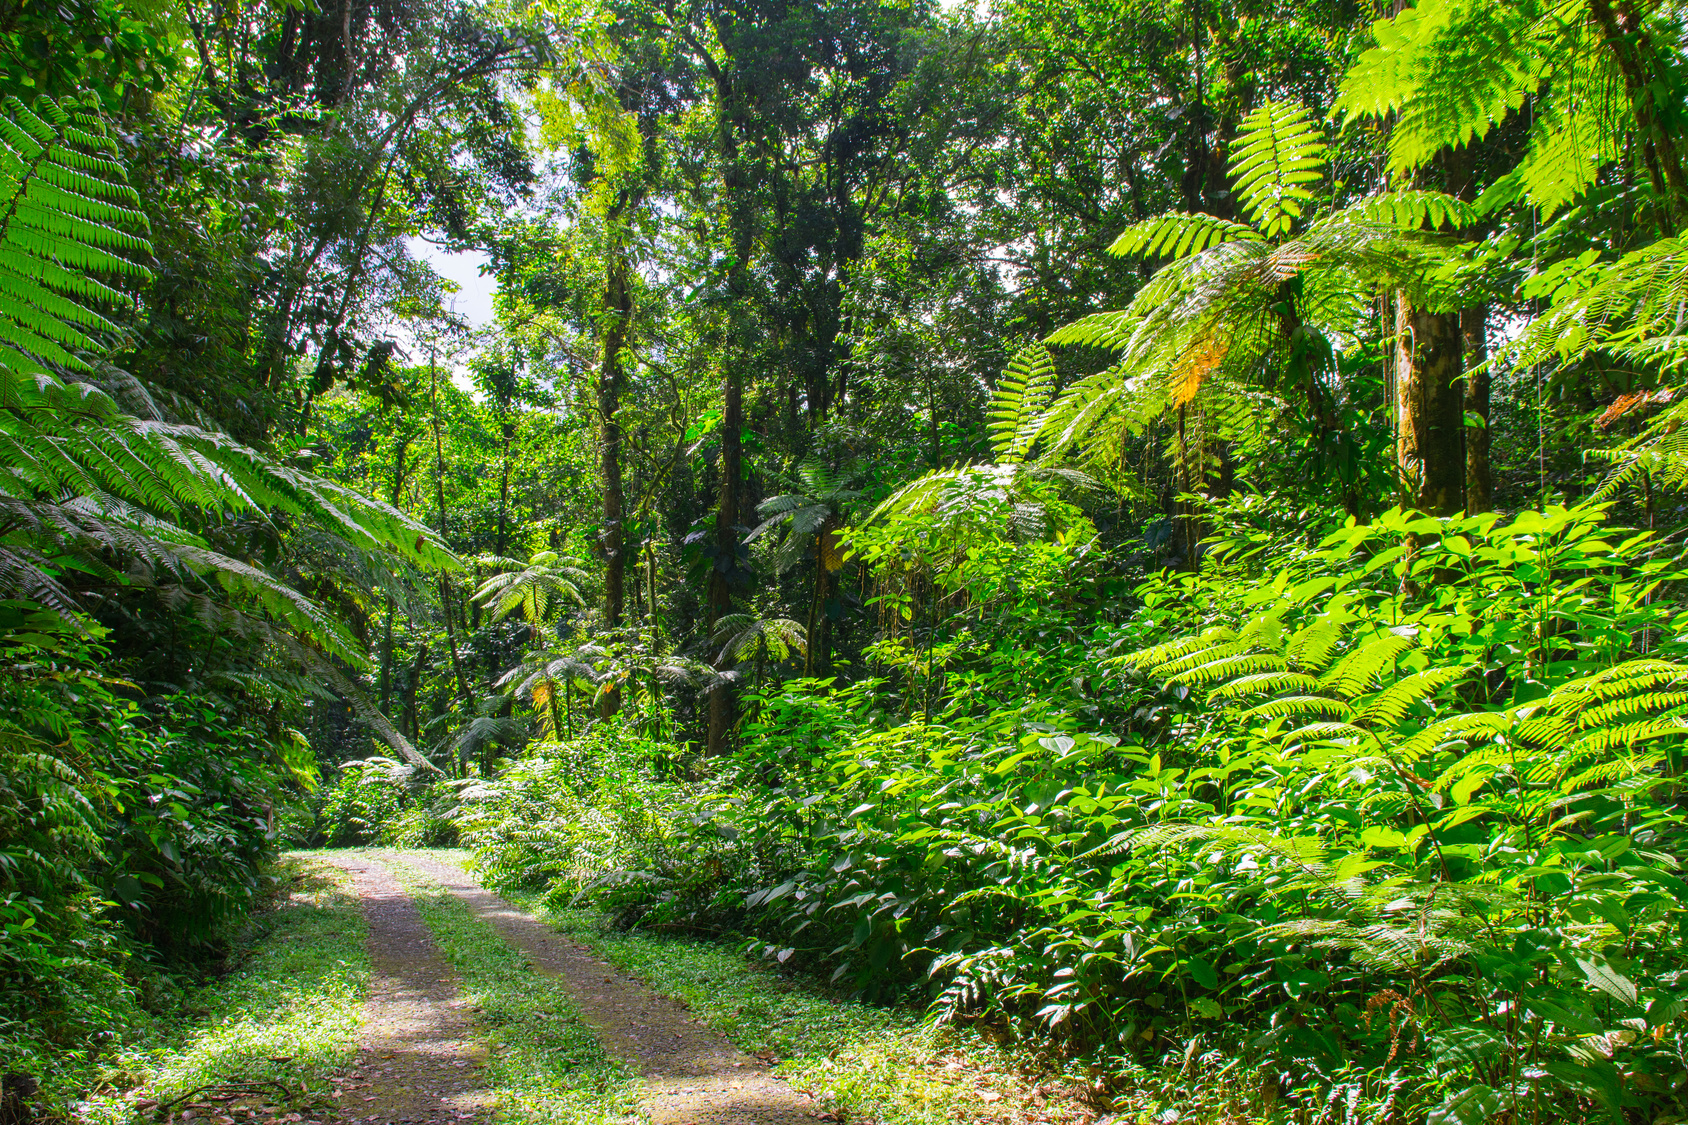 Par les traces « sentiers balisés » du Parc national de la Guadeloupe... © Nicolas, Fotolia